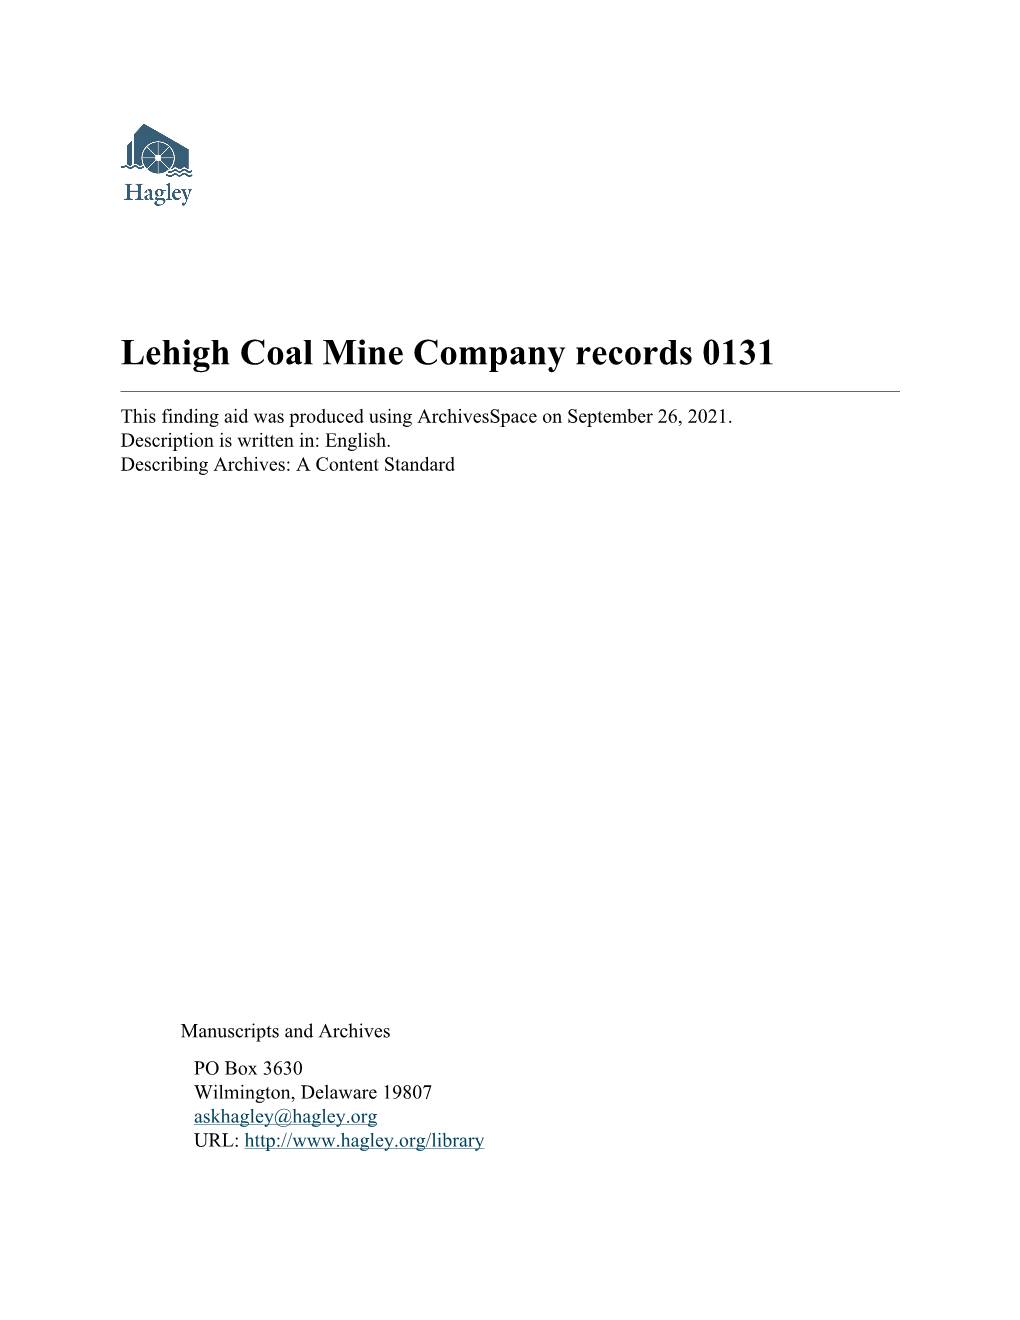 Lehigh Coal Mine Company Records 0131